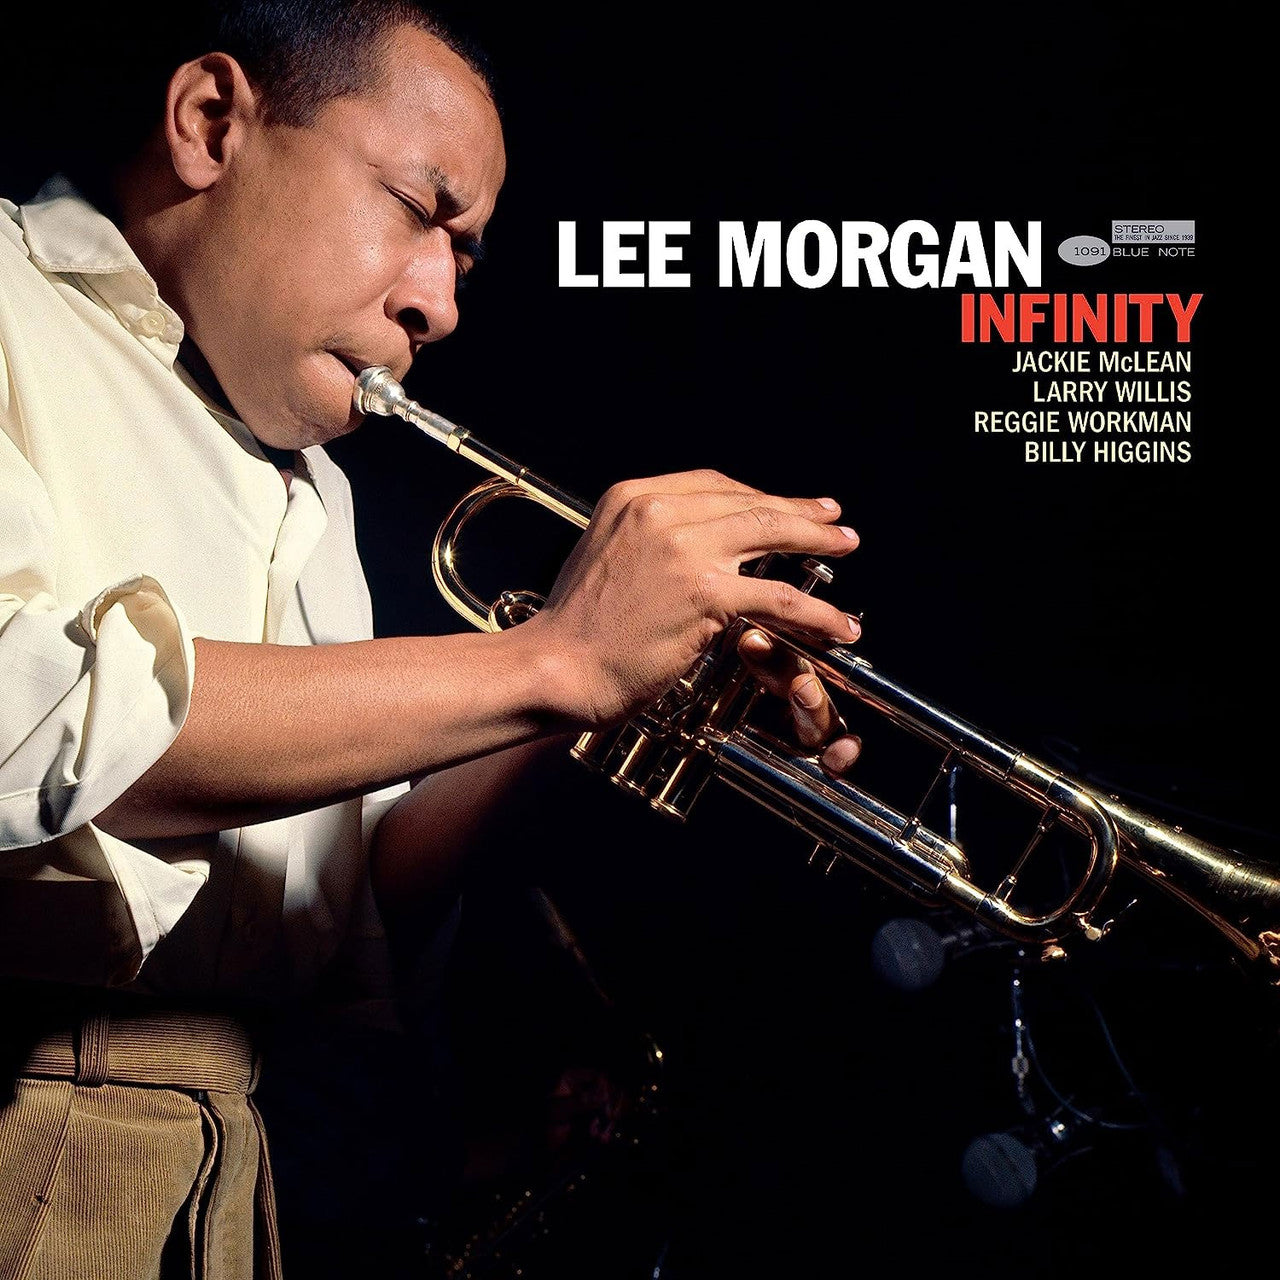 Morgan, Lee "Infinity" [Blue Note Tone Poet Series]